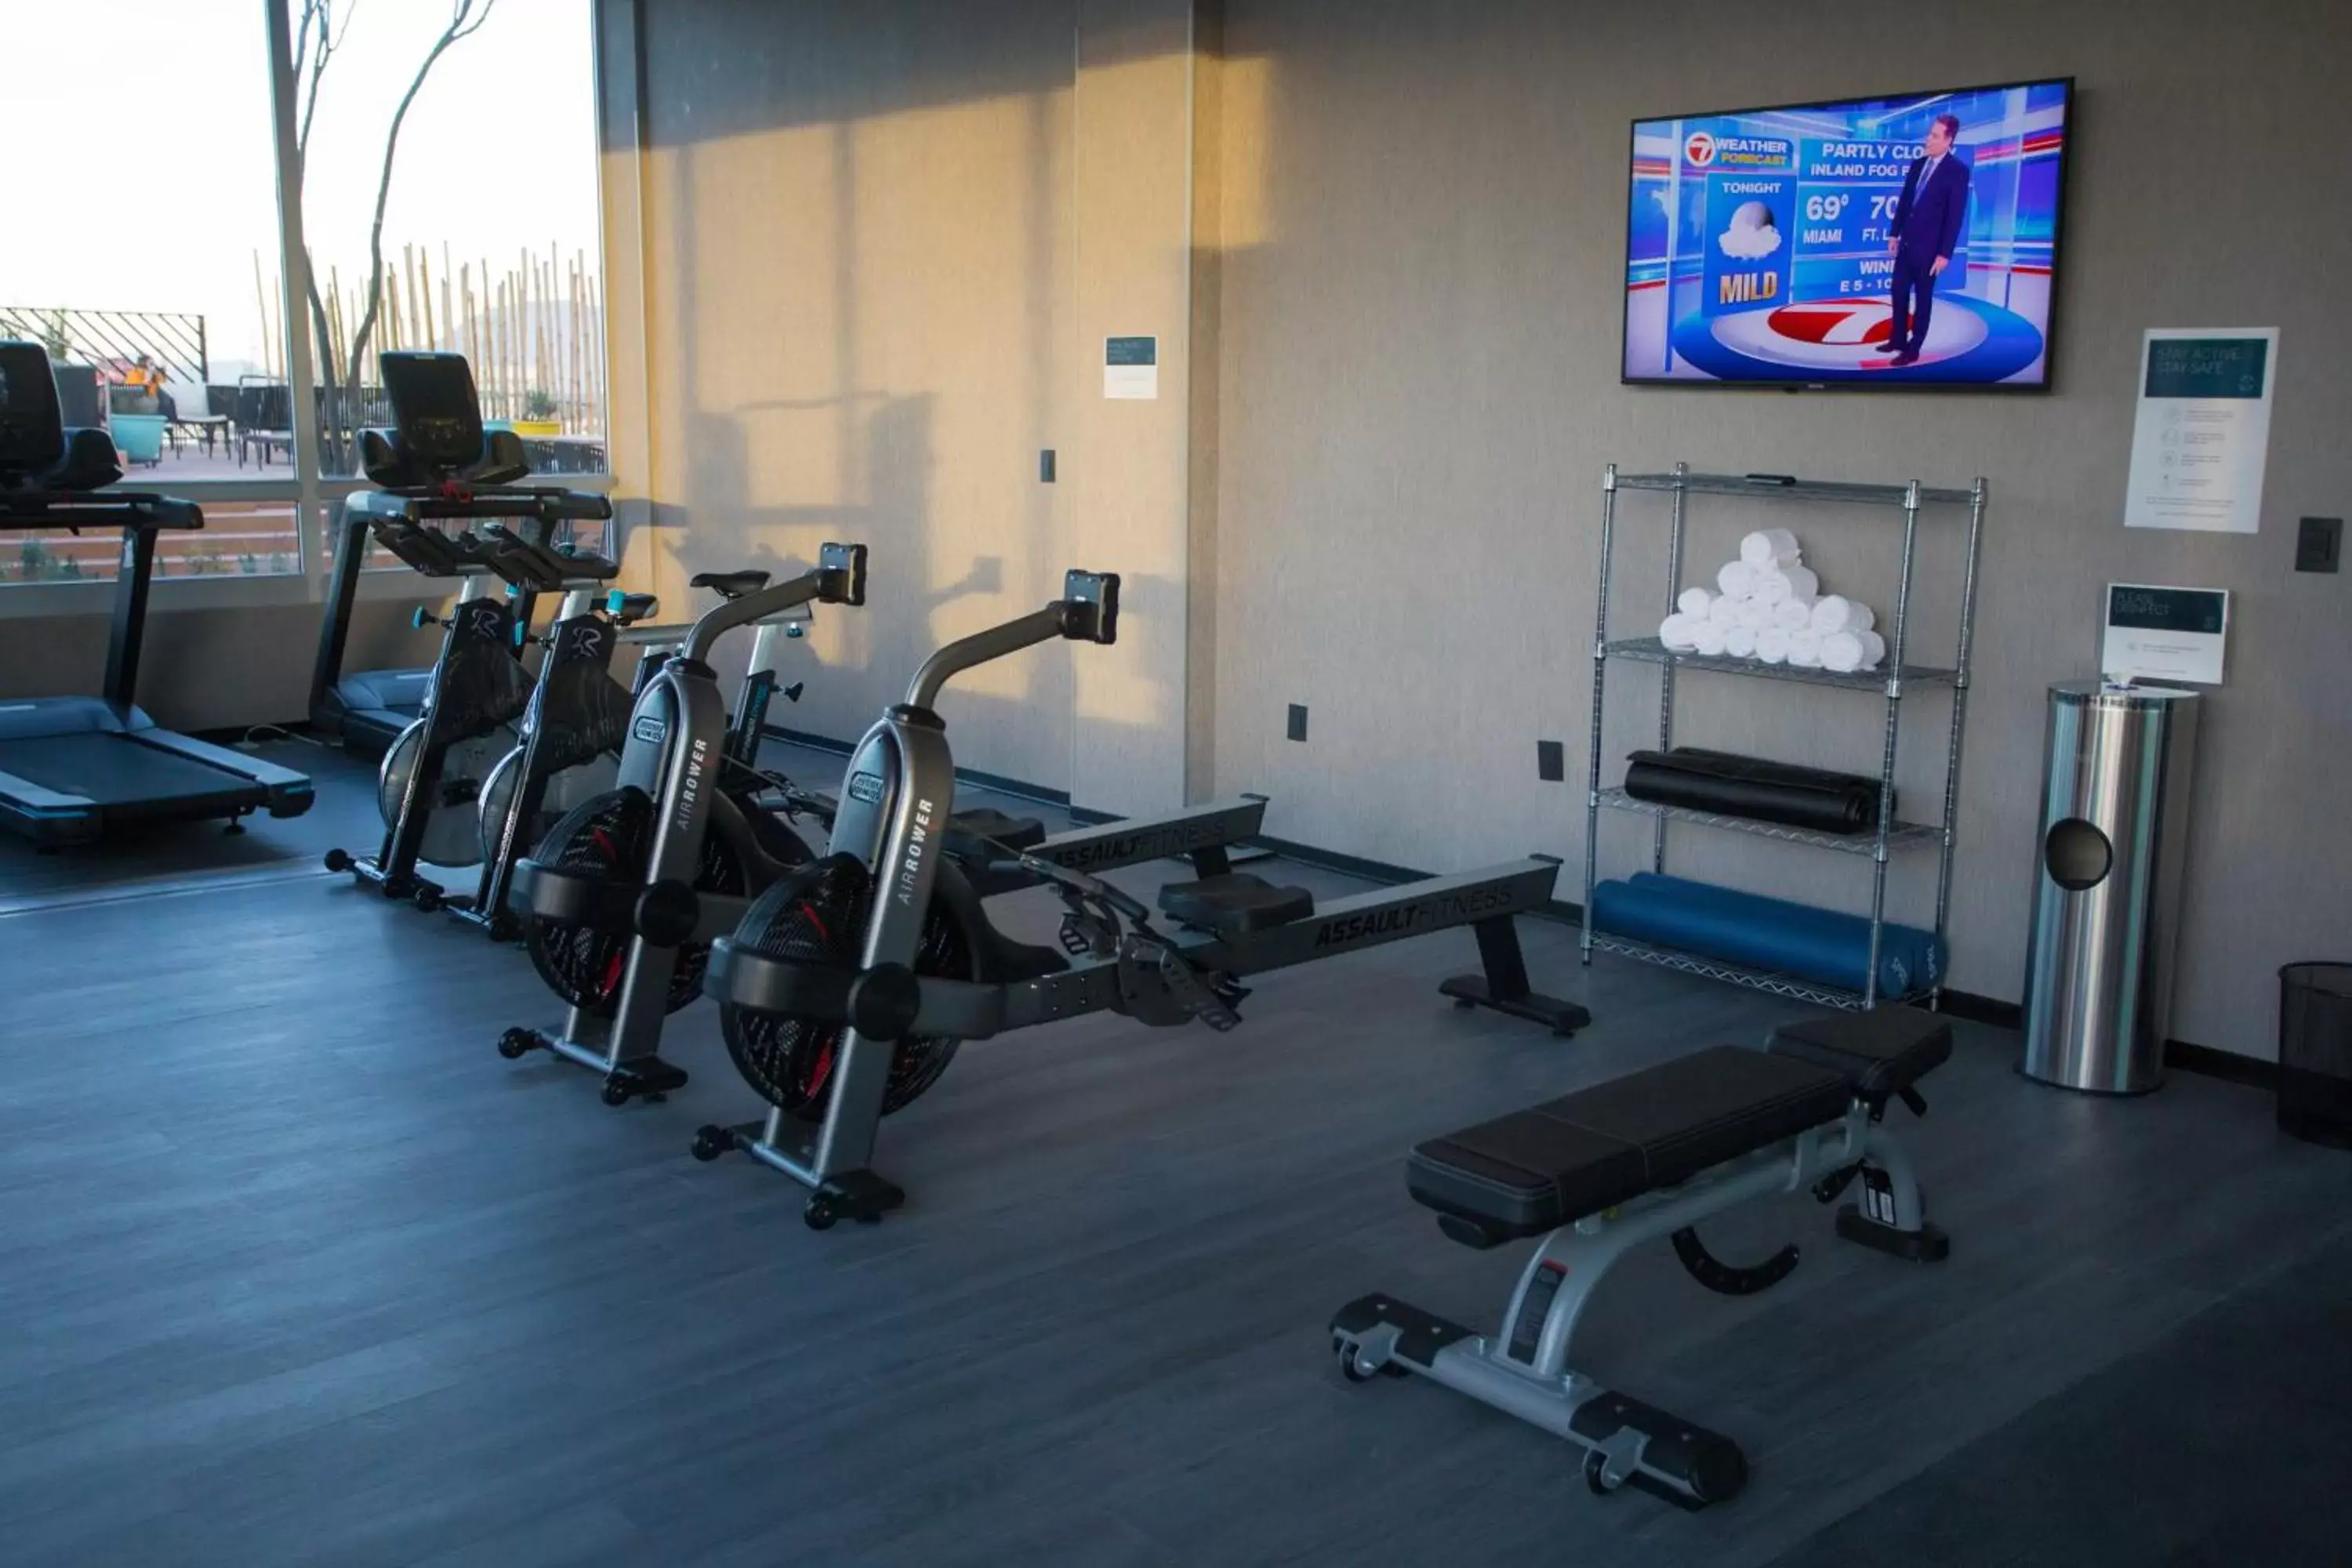 Fitness centre/facilities, Fitness Center/Facilities in Hyatt Place Saltillo